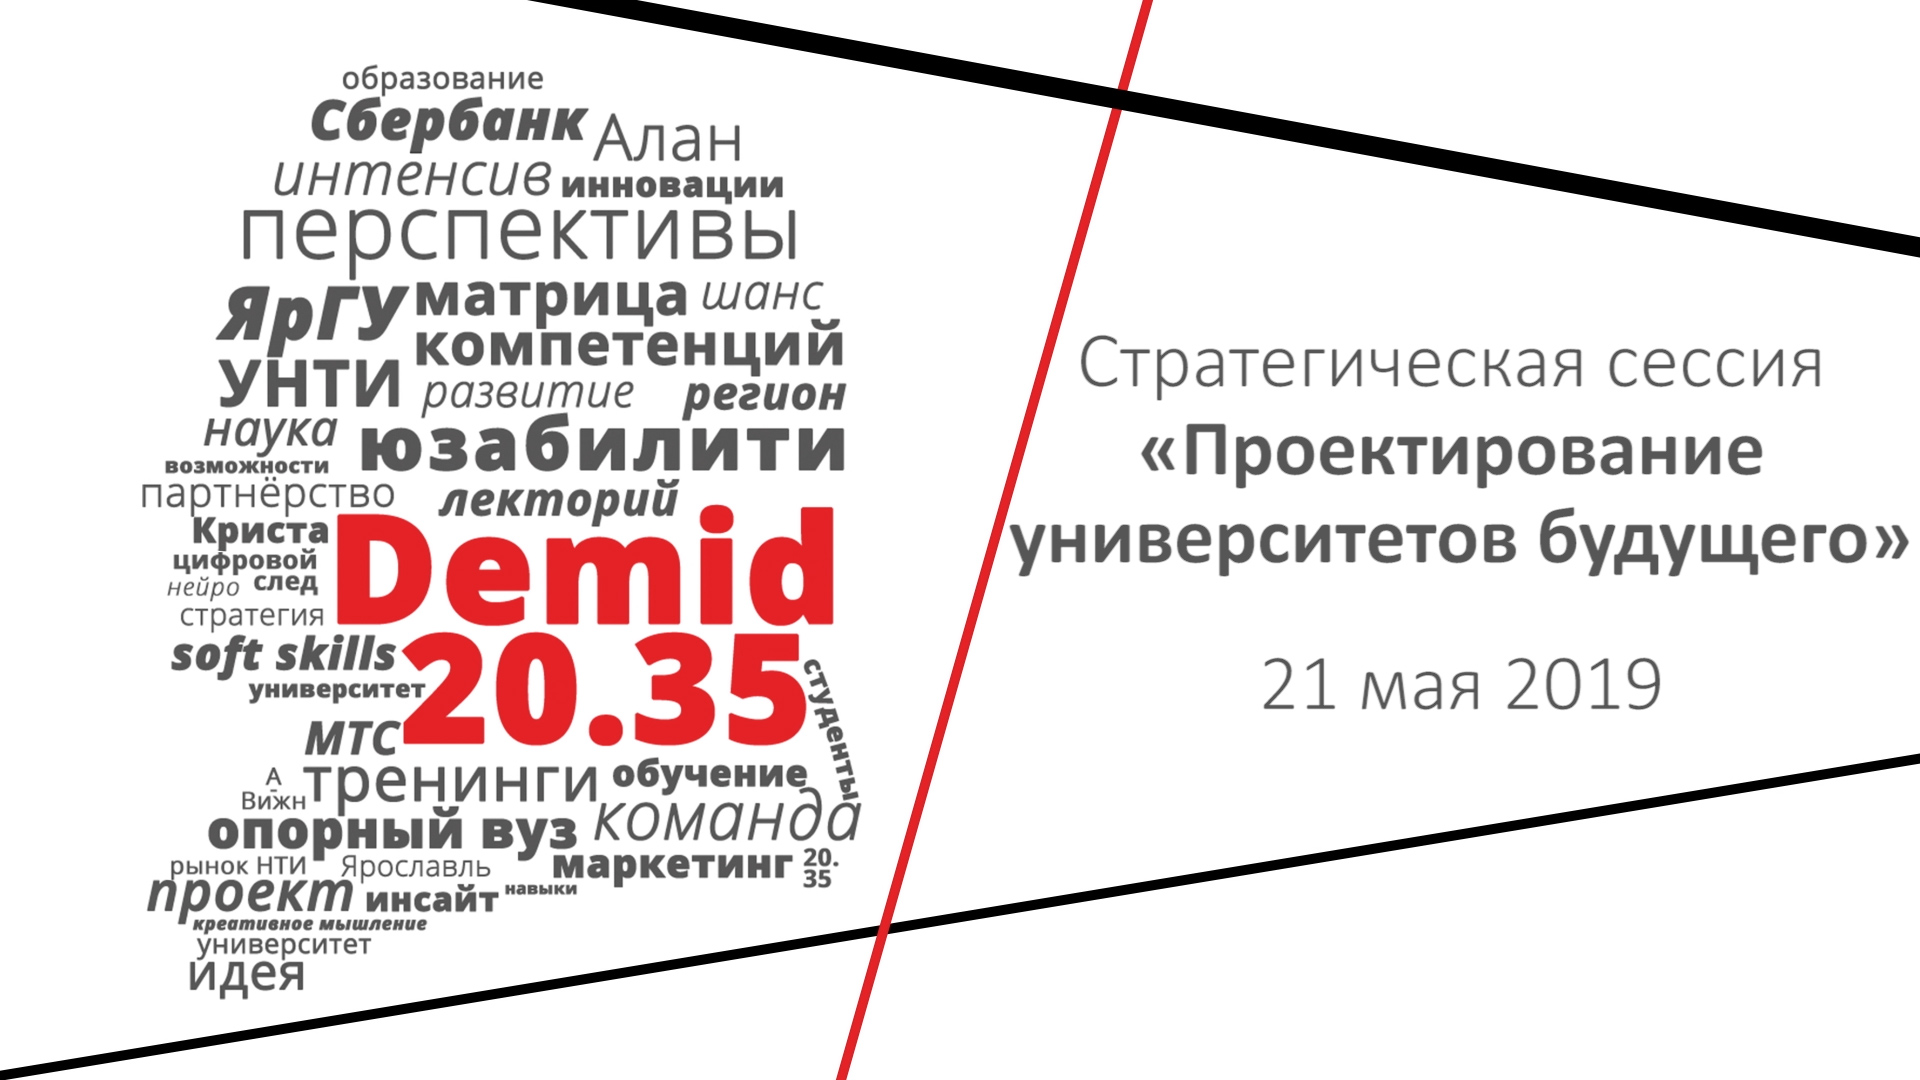 #Demid2035: проектирование университетов будущего